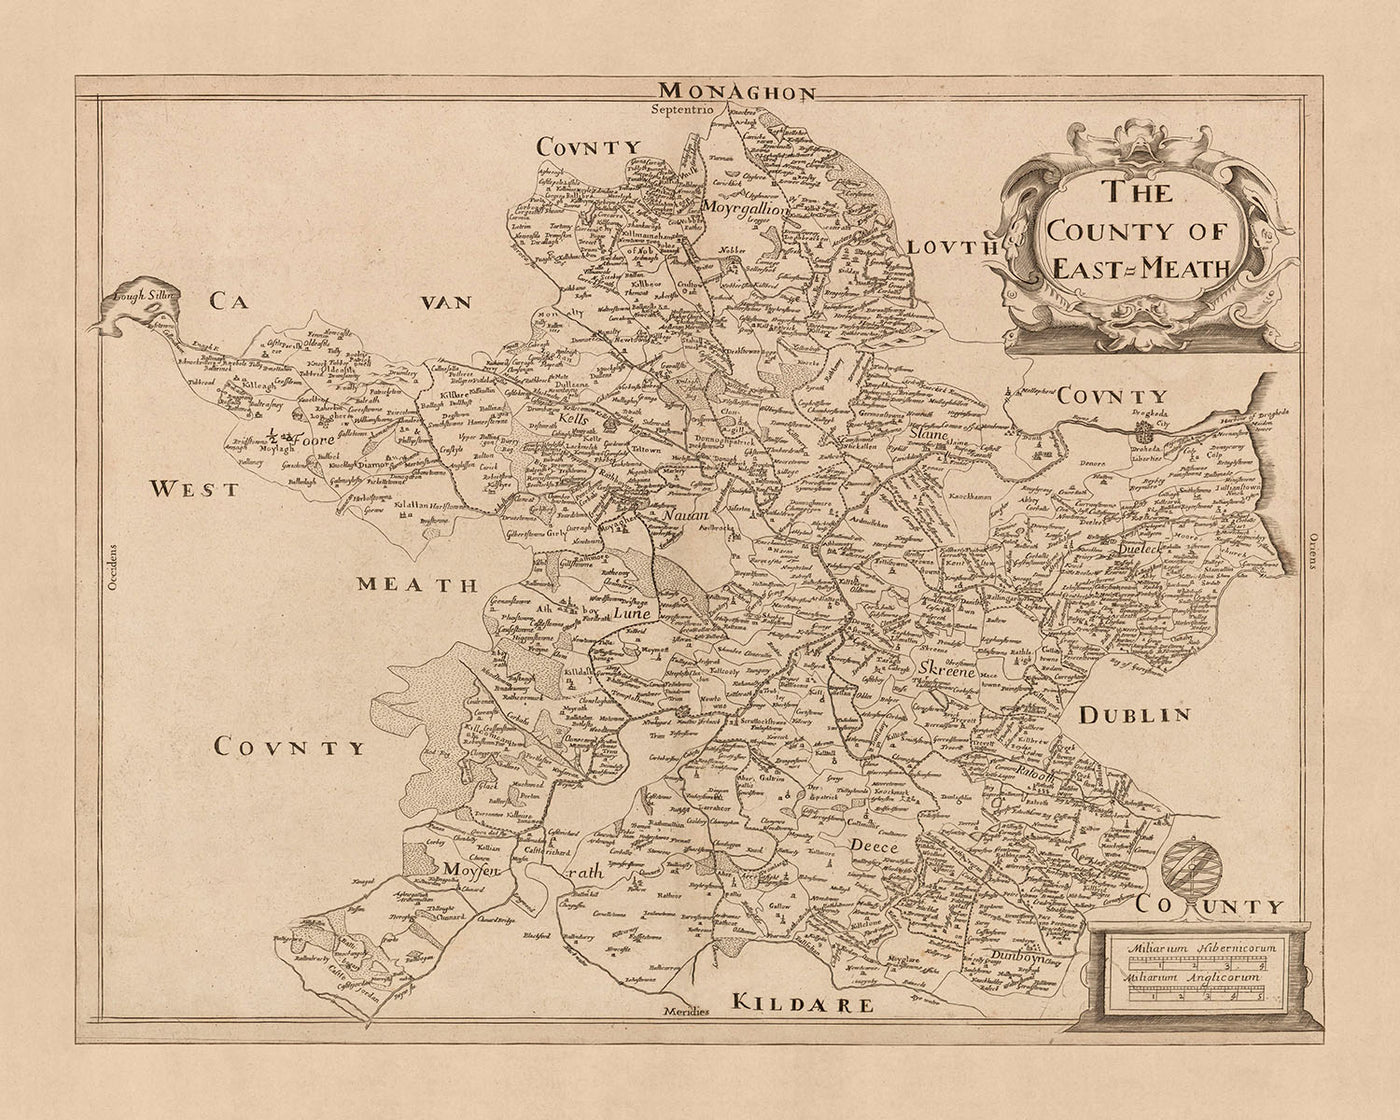 Old Map of County Meath (East Meath) by Petty, 1685: Trim, Navan, Kells, Ashbourne, Drogheda, Skerries